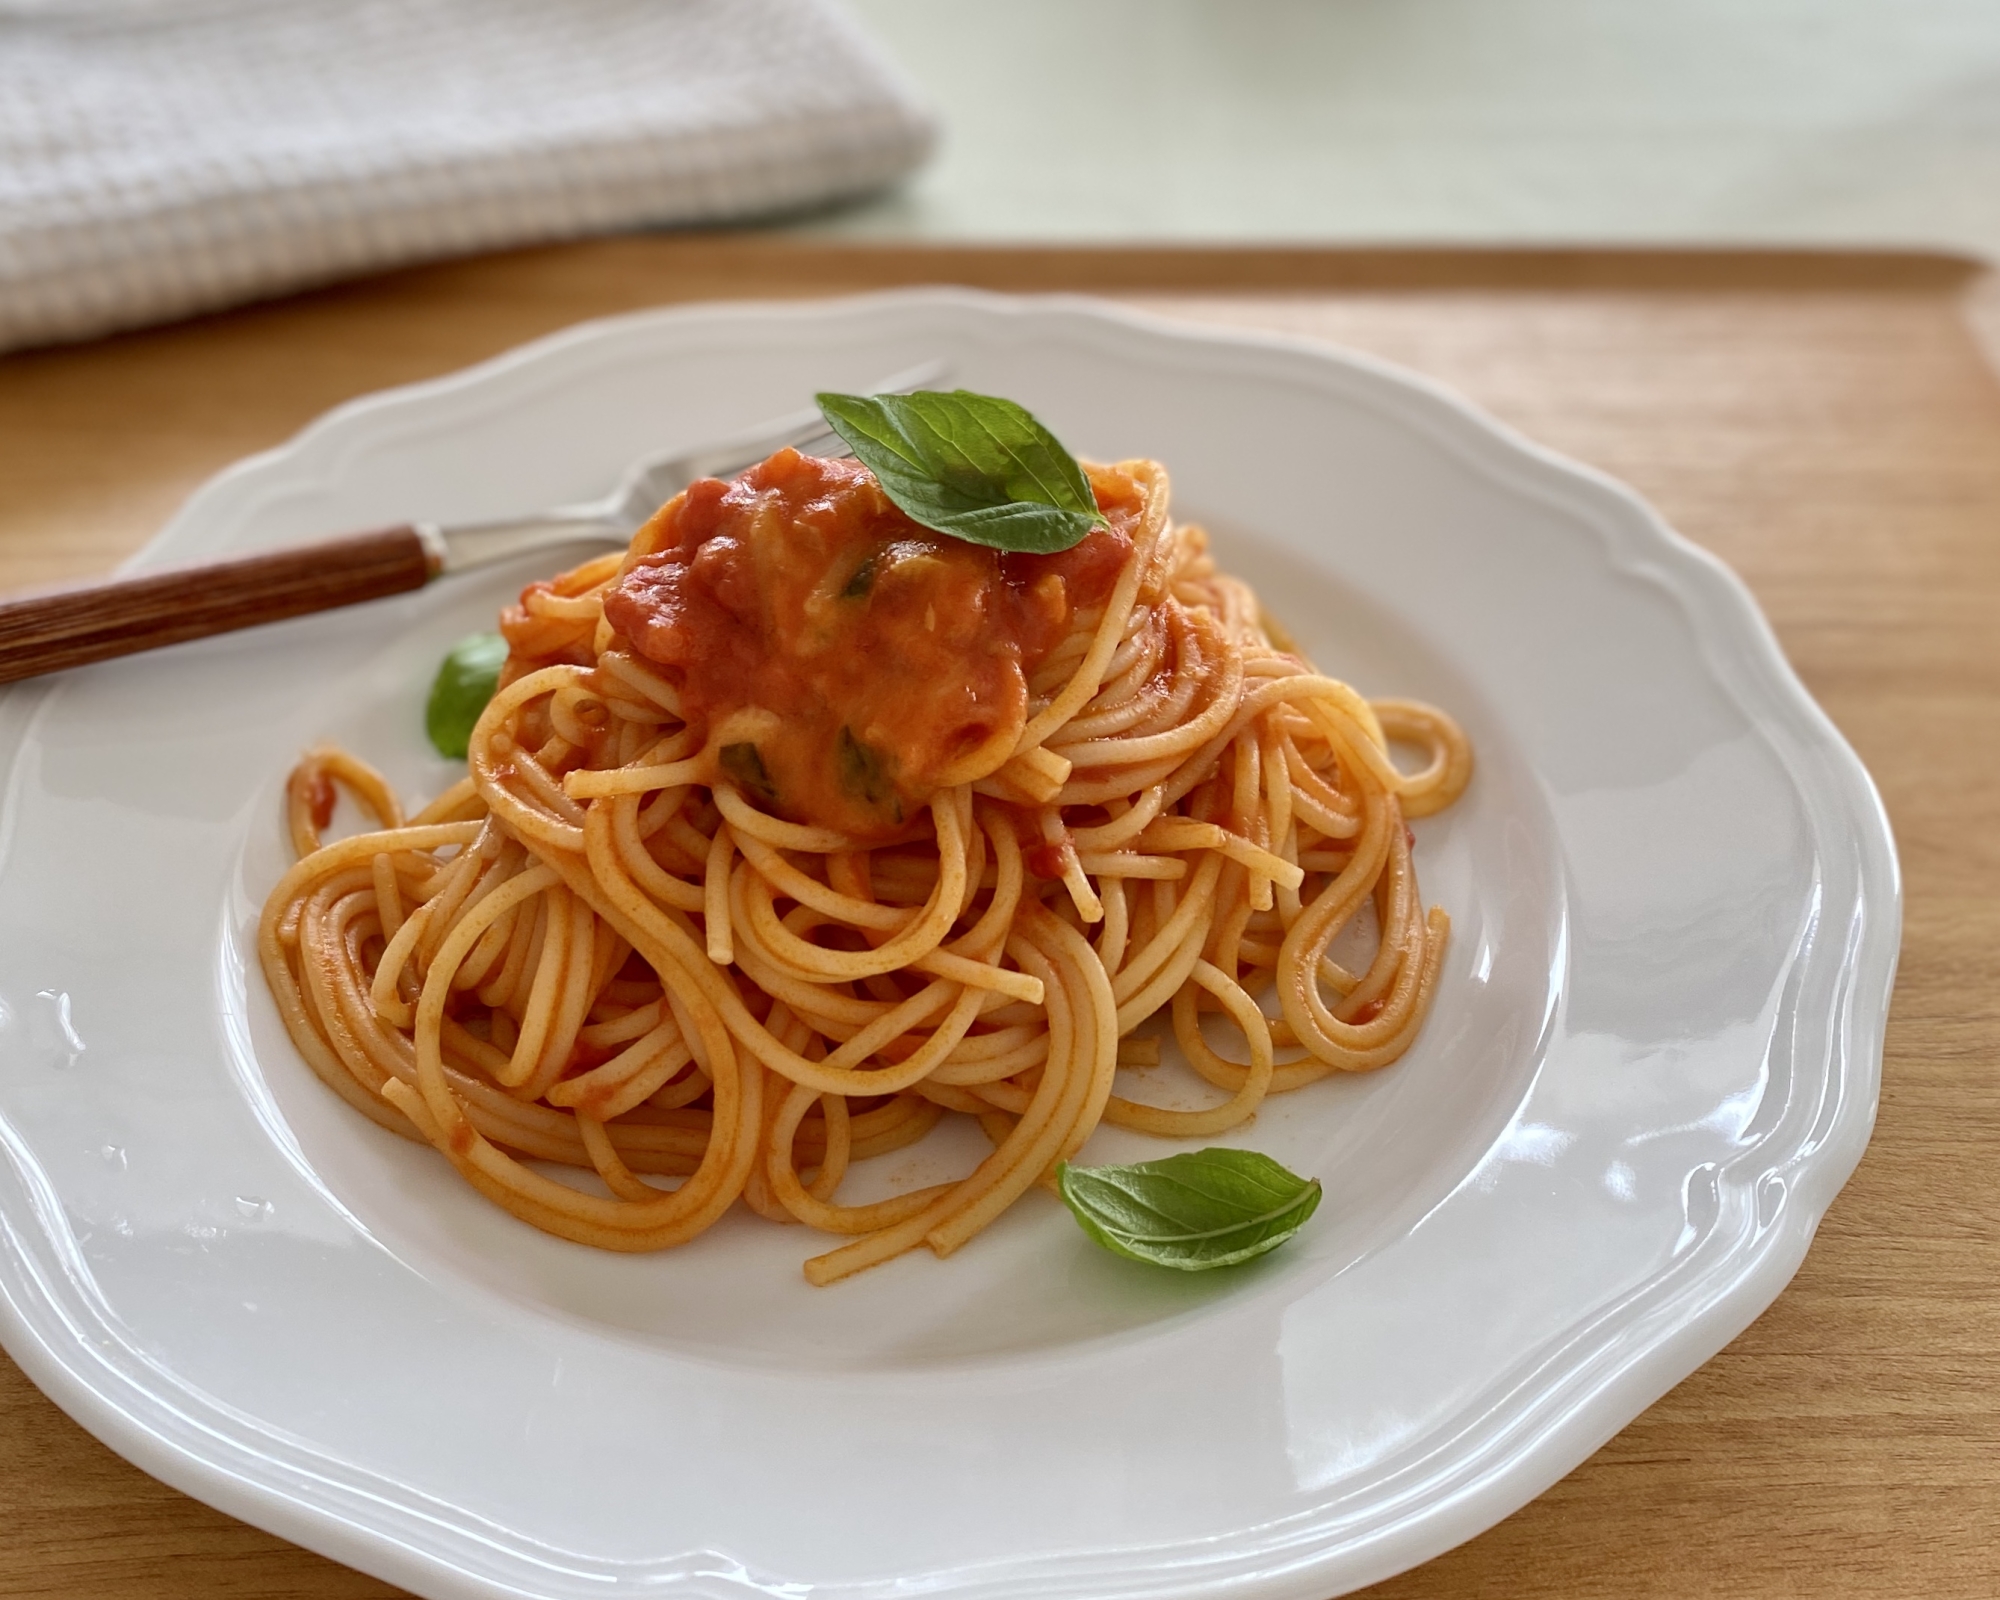 トマトとバジルのマルゲリータ風パスタが白い皿にのっている様子